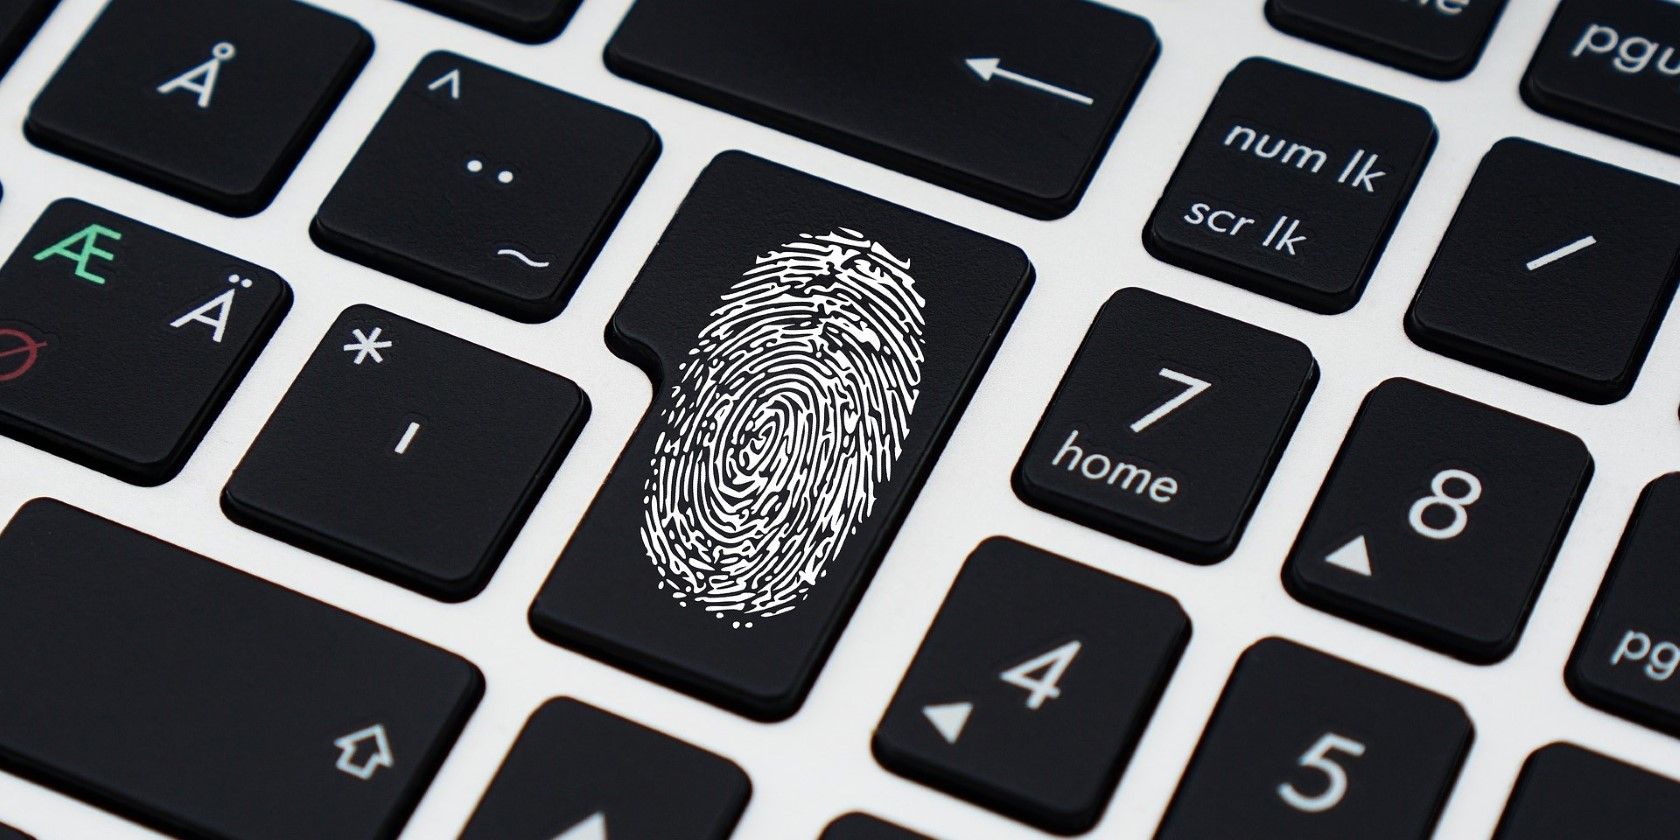 Fingerprint key on a laptop keyboard